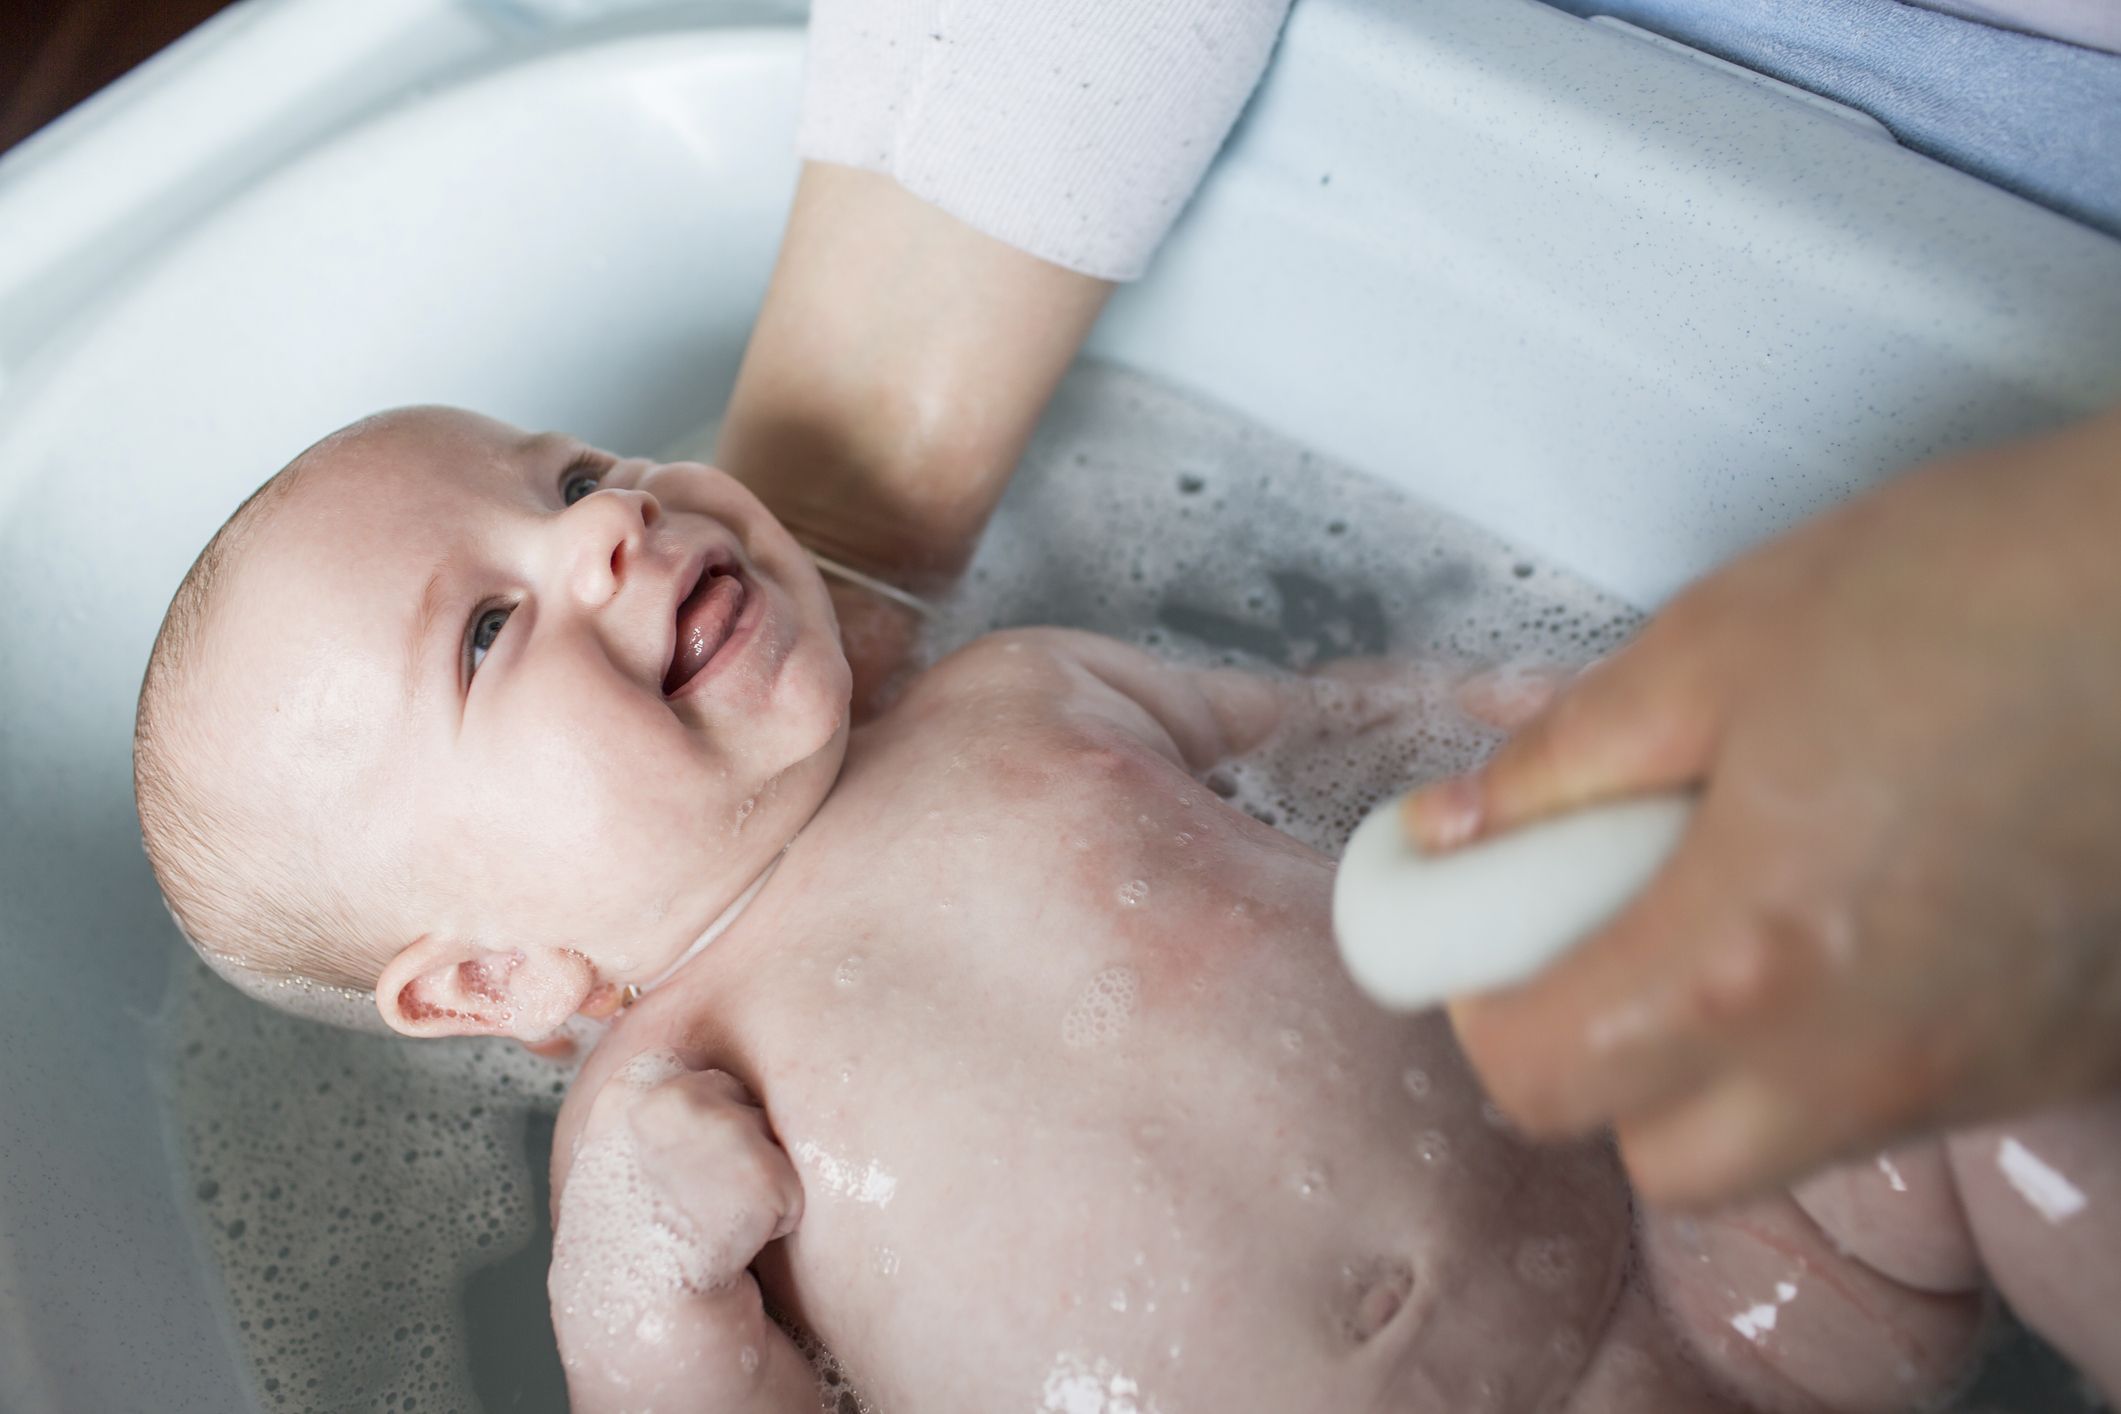 Cinco bañeras de bebé baratas ideales para comprar